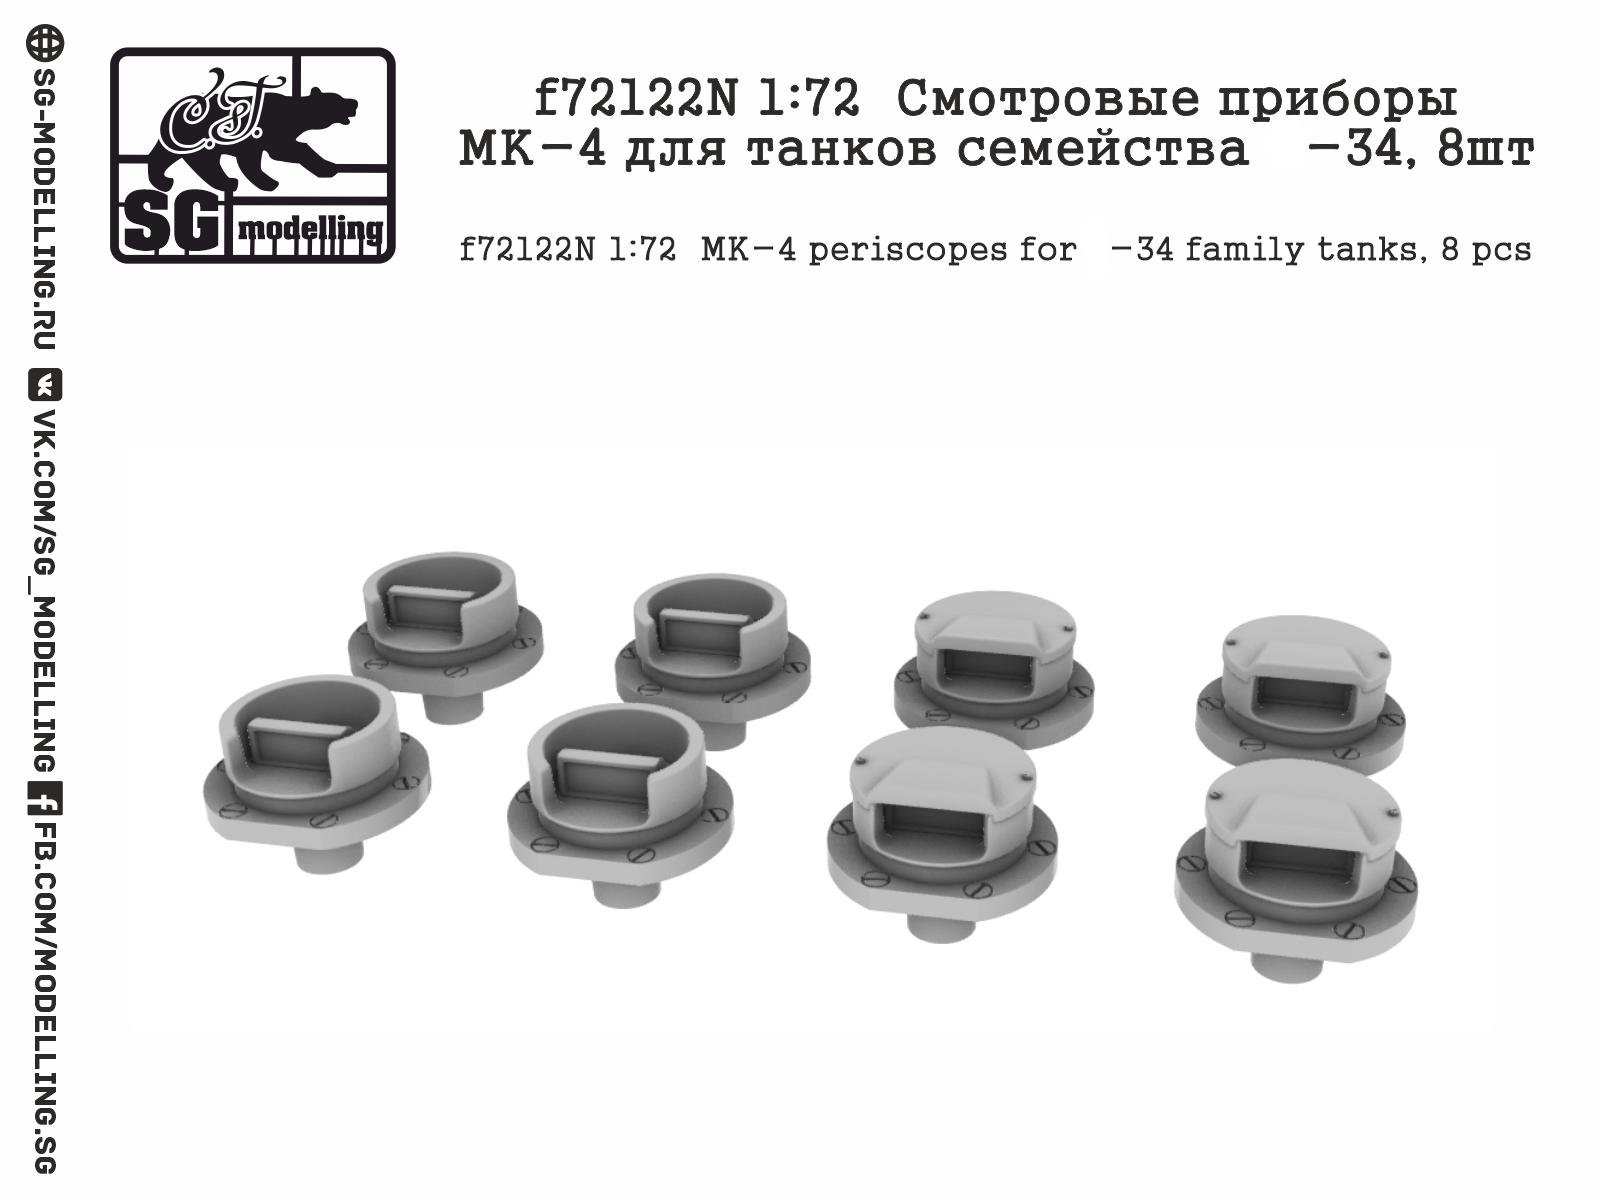 f72122N  дополнения из смолы  Смотровые приборы МК-4 для танков семейства Танк-34, 8шт  (1:72)